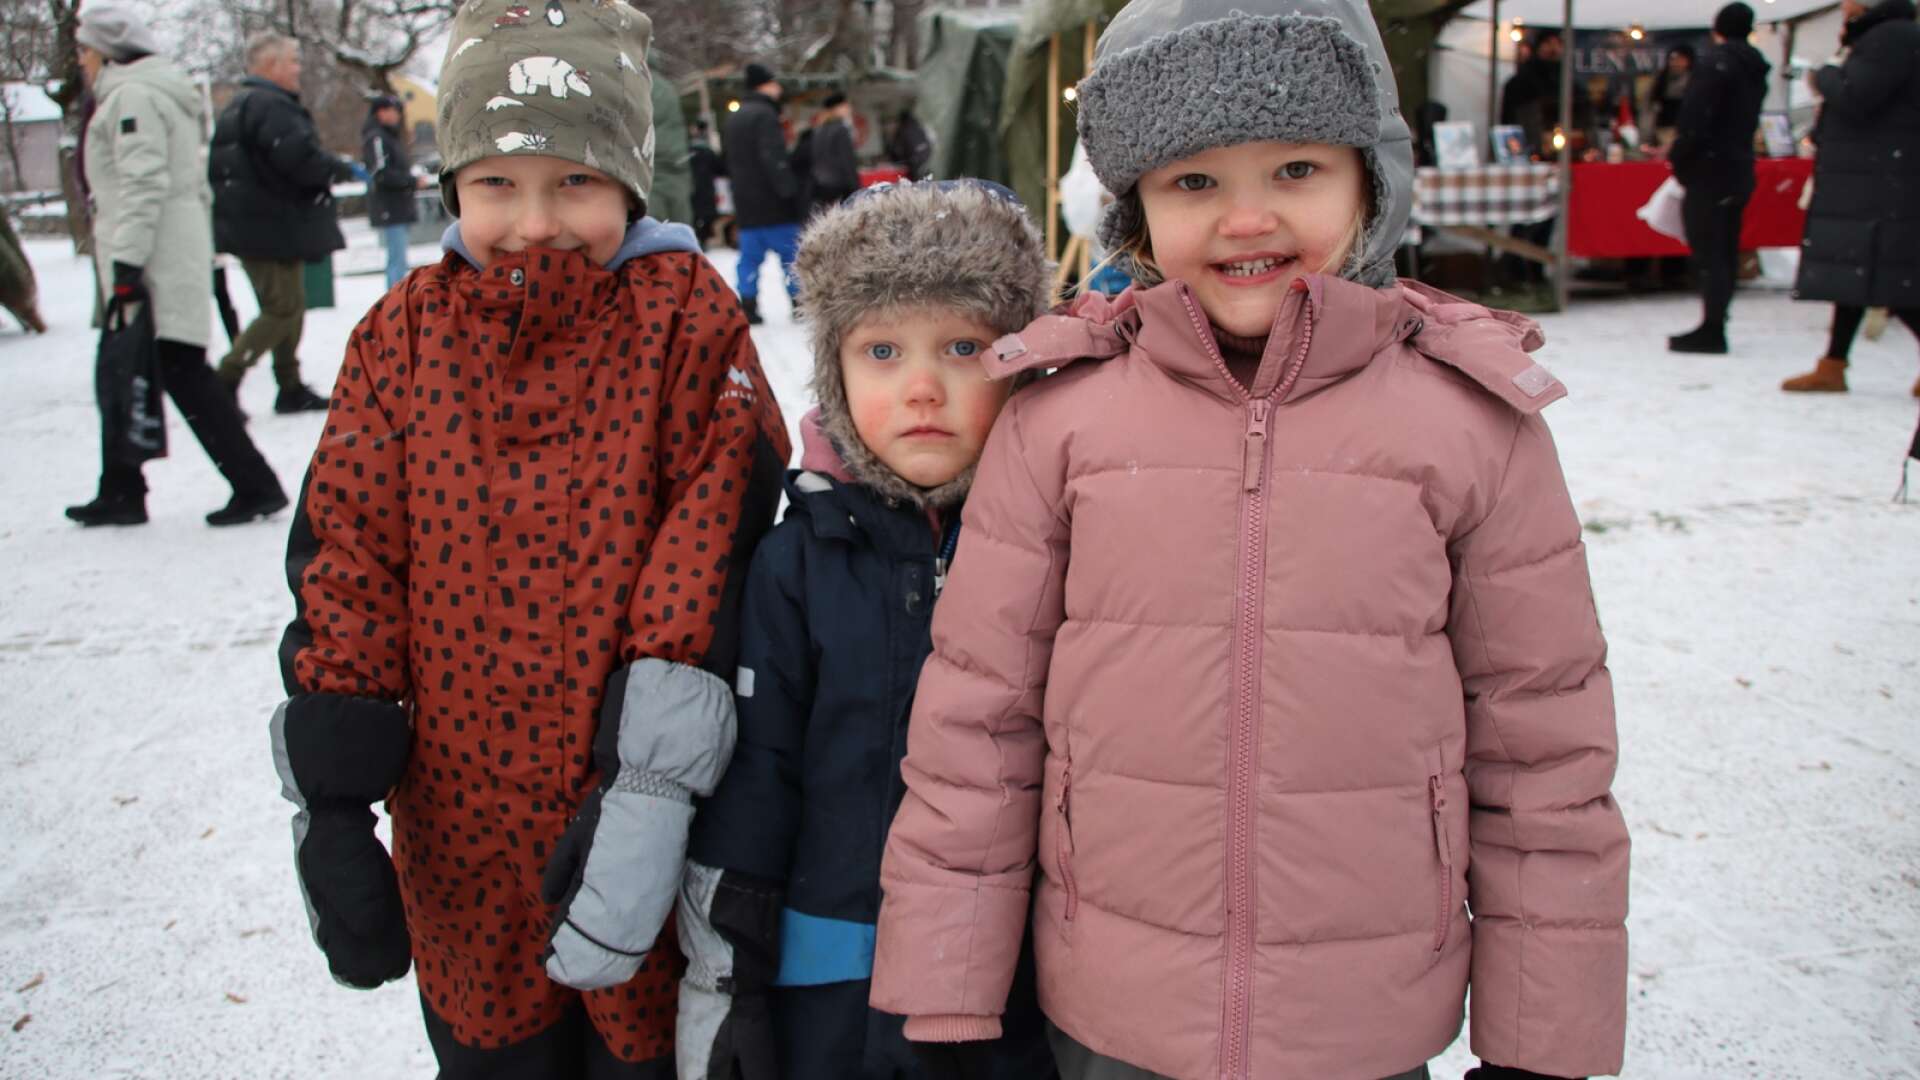 Filipstads julmarknad blev en fest för hela familjen. Det såldes juldekorationer, lotter och hembakat, bland annat. Marknaden arrangerades av Filipstadsföretag i samverkan. Syskonen Ebbe Jakobsson (till vänster) och Flora Jakobsson besökte marknaden tillsammans med sin kusin Iris Lundqvist.